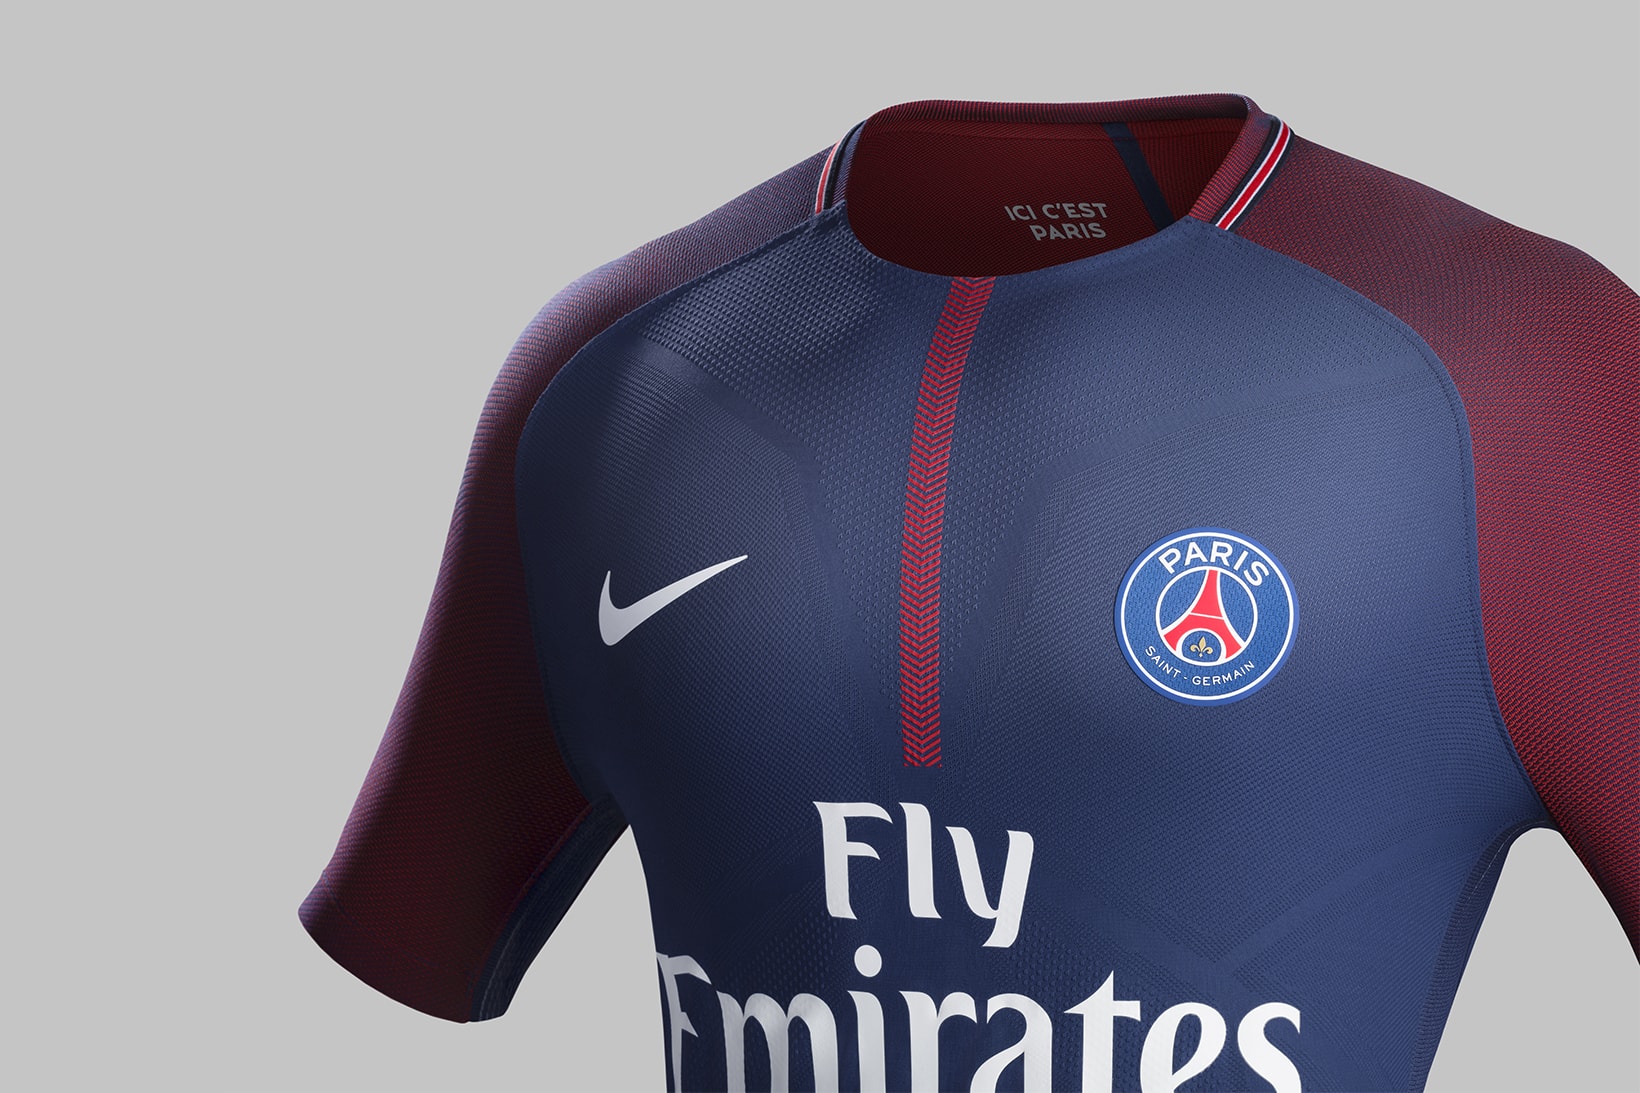 Paris Saint Germain 2017 18 Nike Home Kit PSG Edinson Cavani